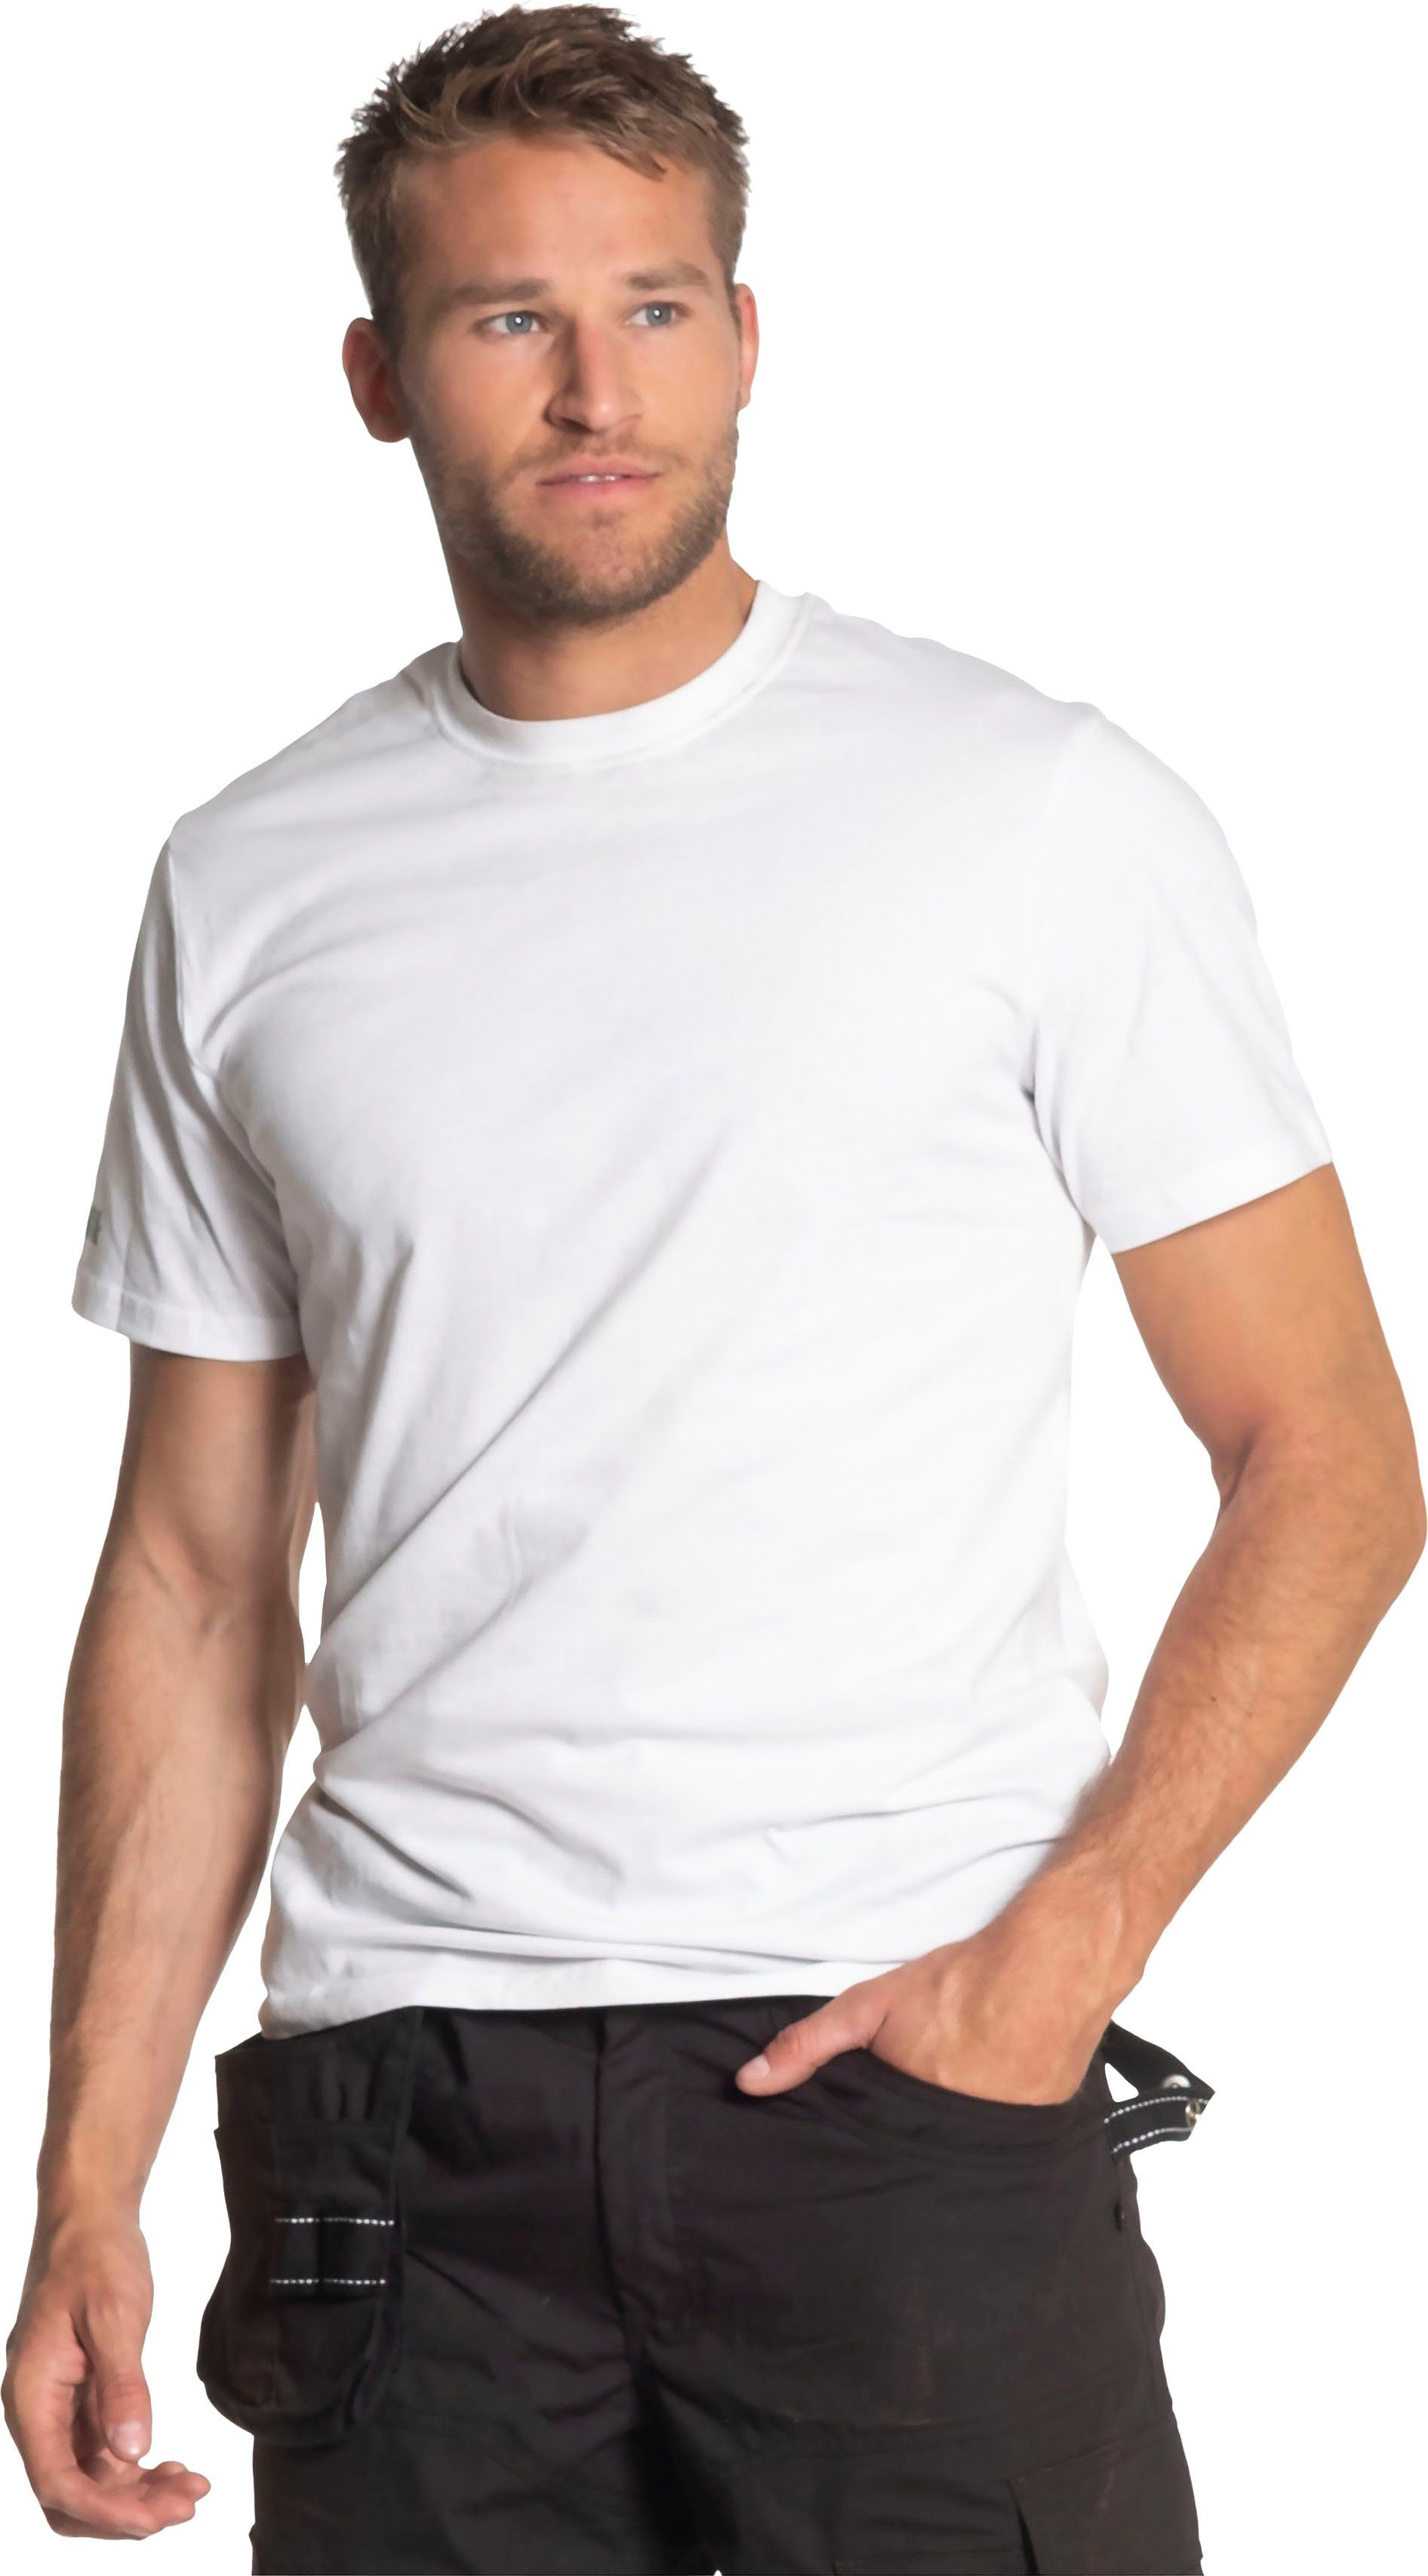 T-Shirt Rippstrickkragen weiß kurze Callius kurze Ärmel T-Shirt Herock Herock®-Aufdruck, Ärmel, Rundhalsausschnitt,